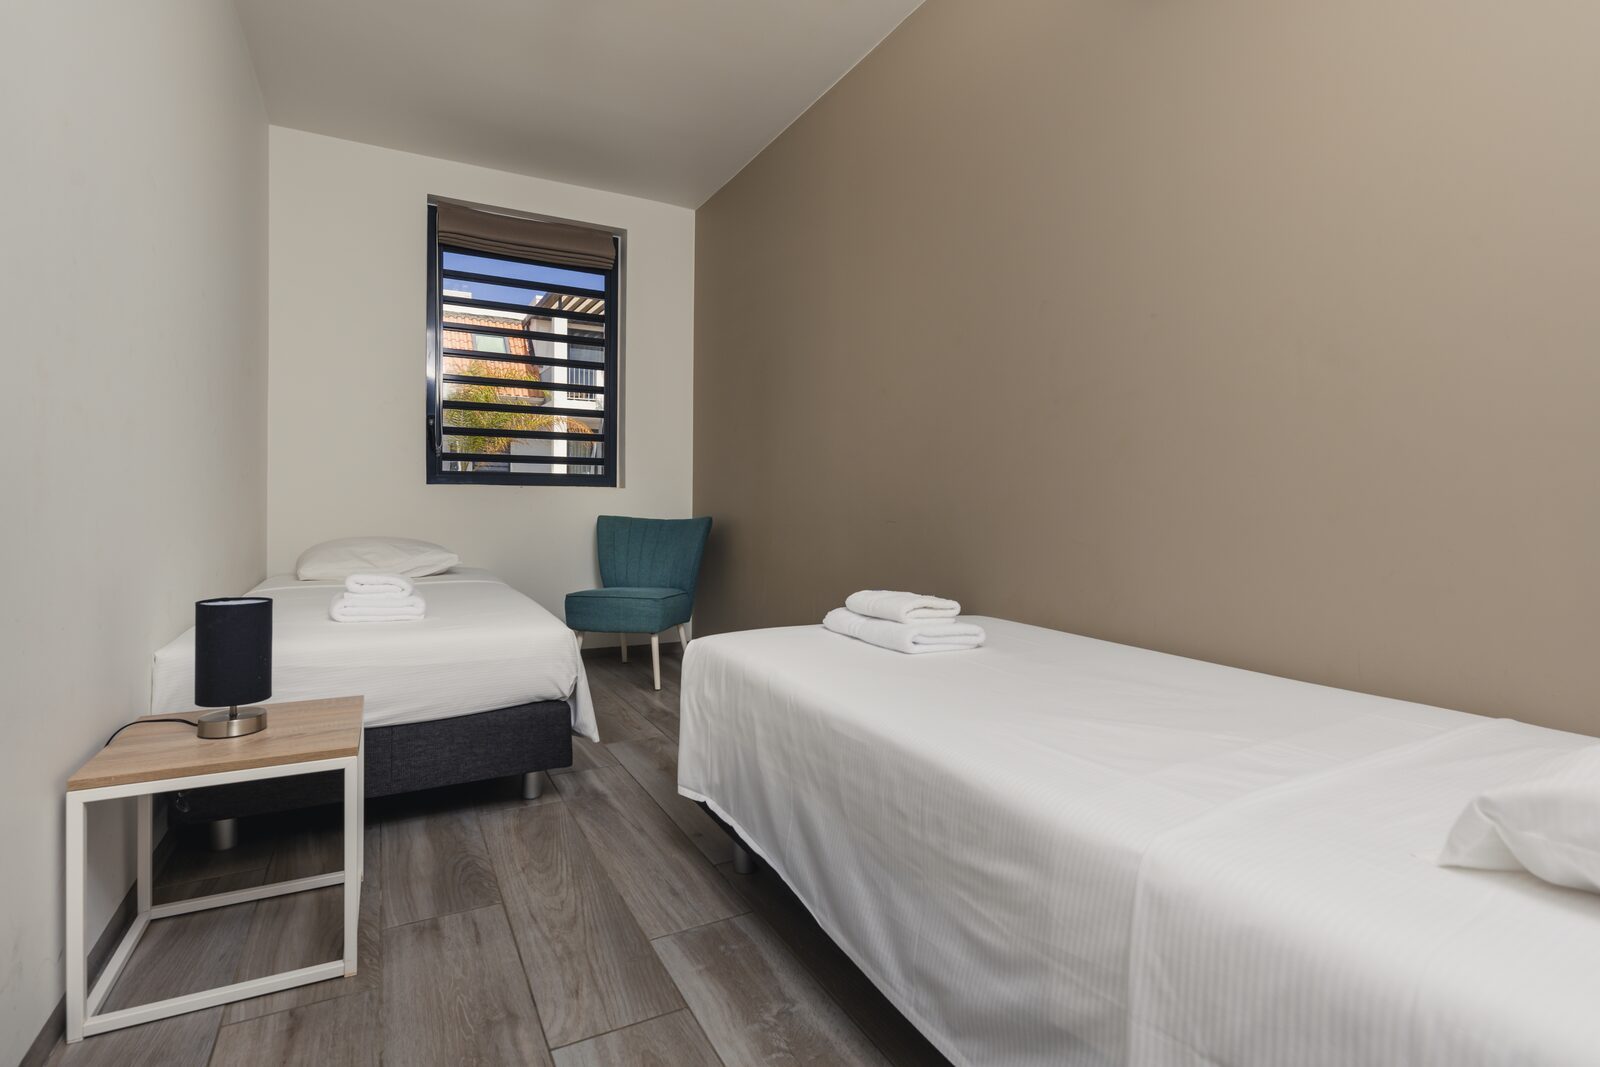 Resort Bonaire beschikt over ruime slaapkamers die in verbinding staan met het balkon. Bekijk onze beschikbare accomodaties!